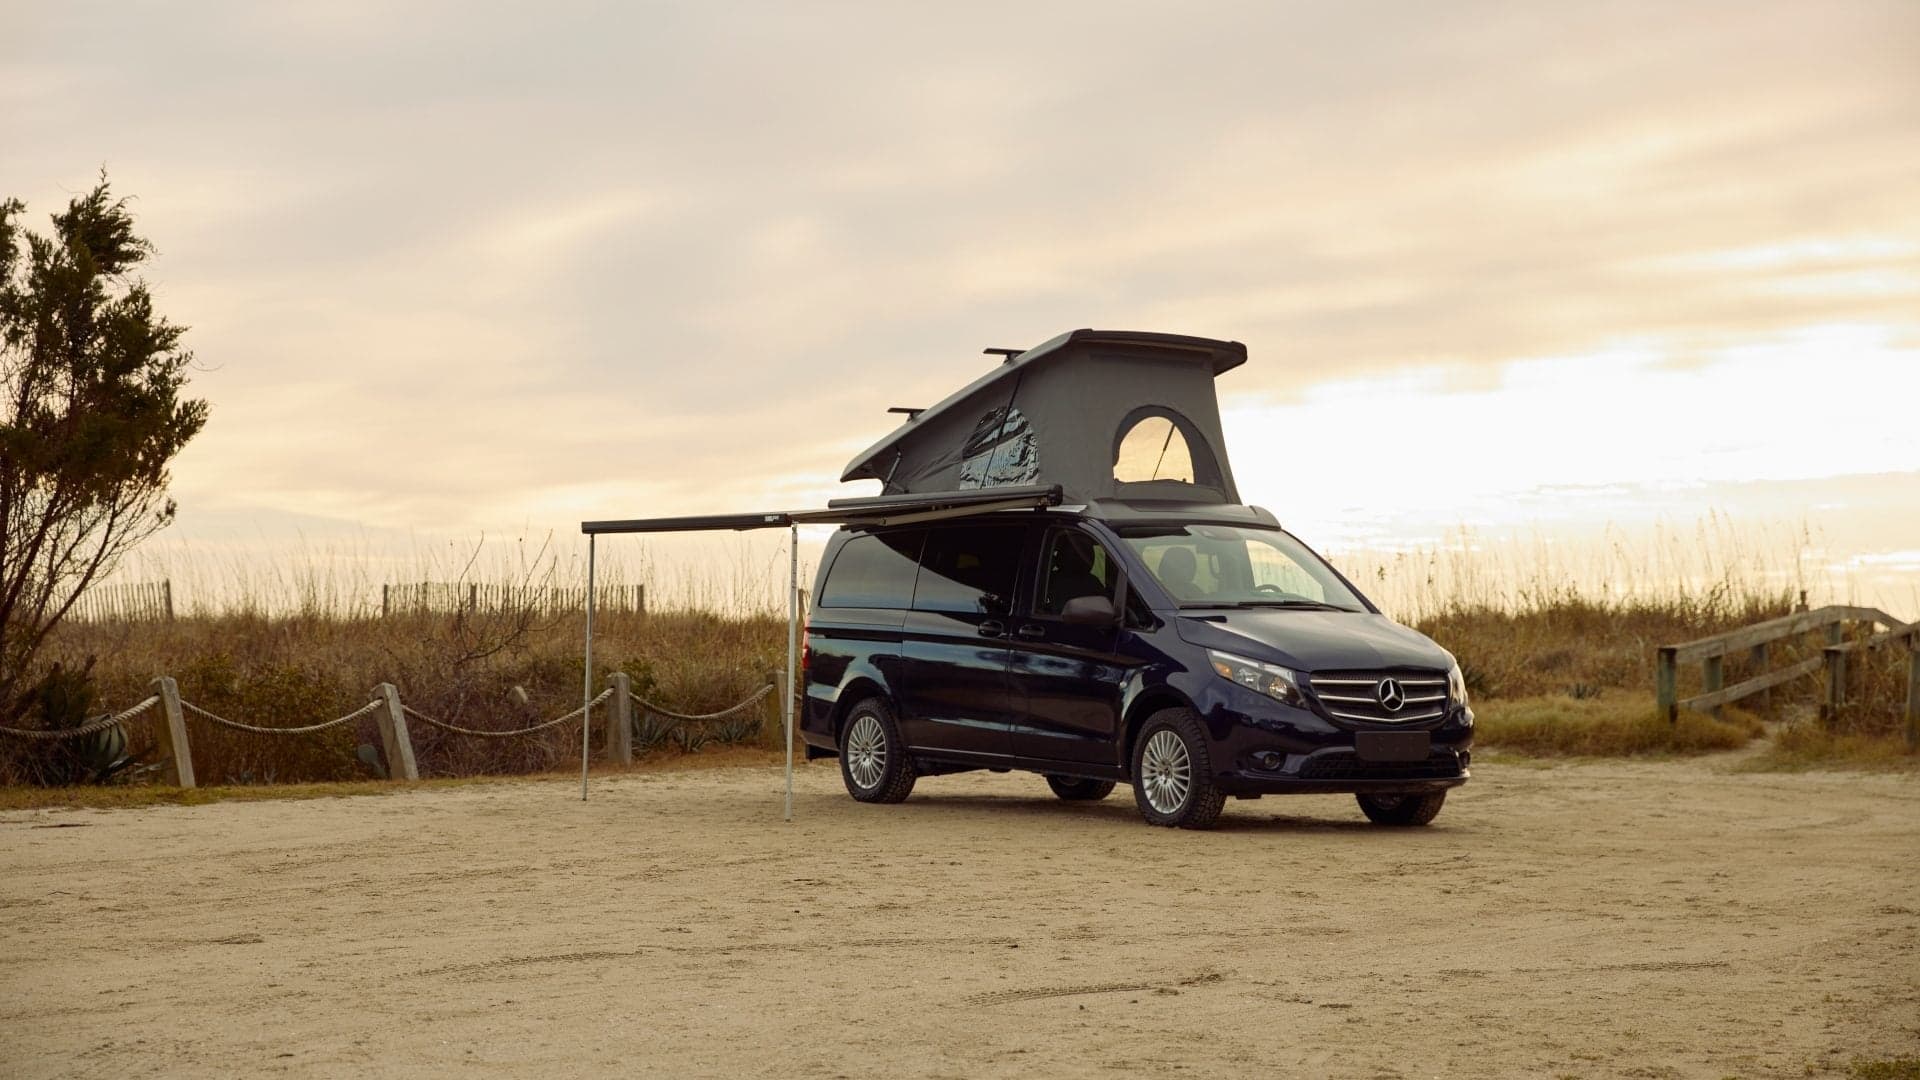 2020 Mercedes-Benz Metris Weekender: Finally We Get One of Those Cool Euro Camper Vans